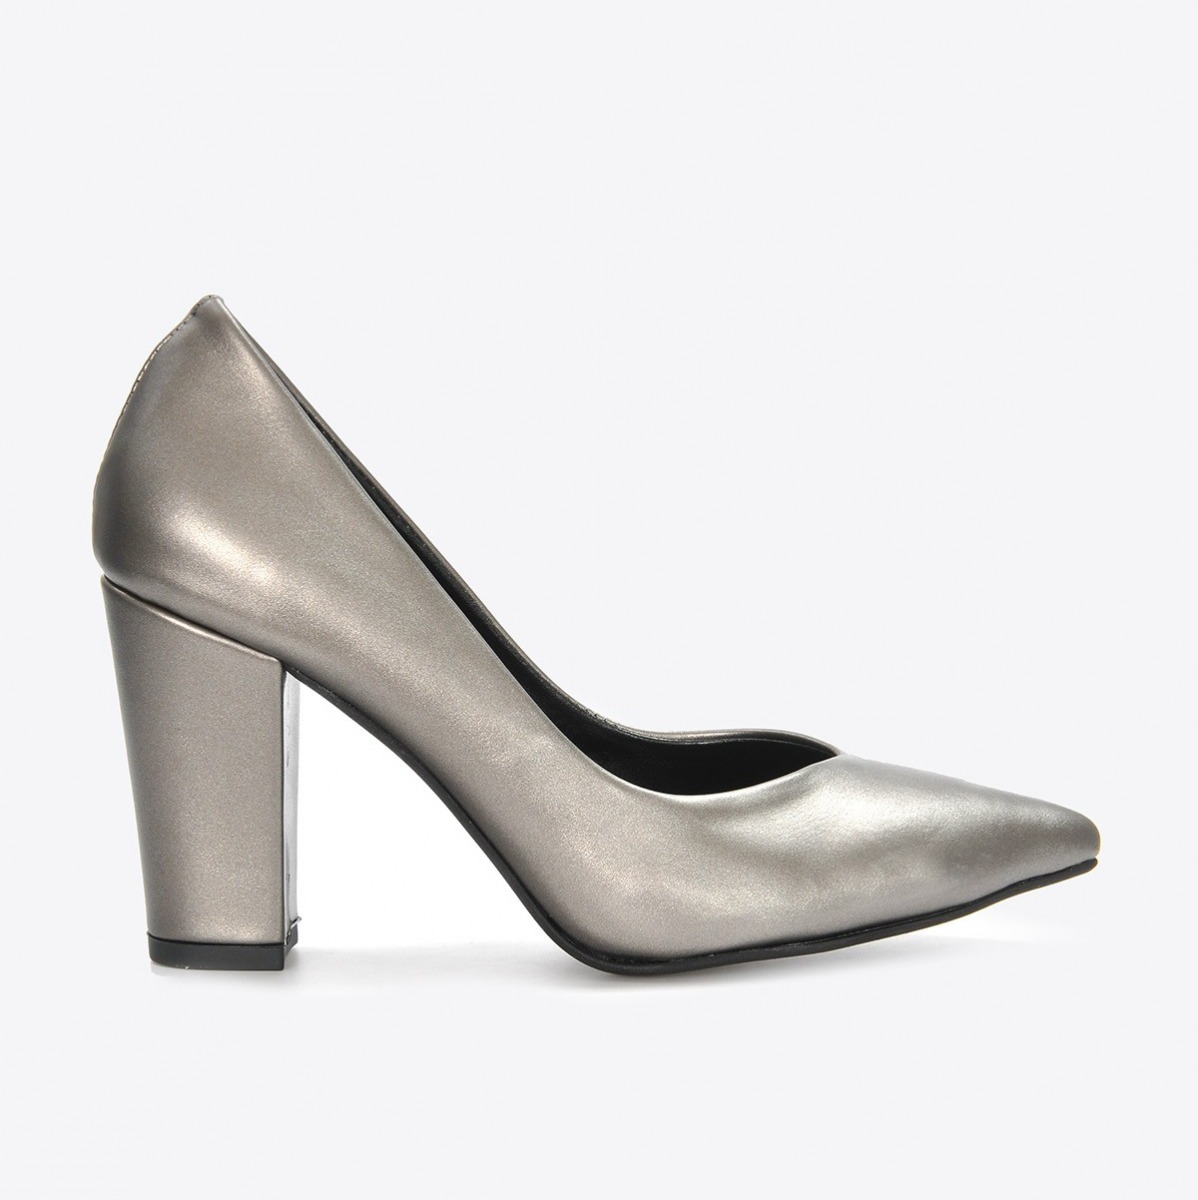 Flo Kadın Platin Klasik Topuklu Ayakkabı VZN21-043Y. 2